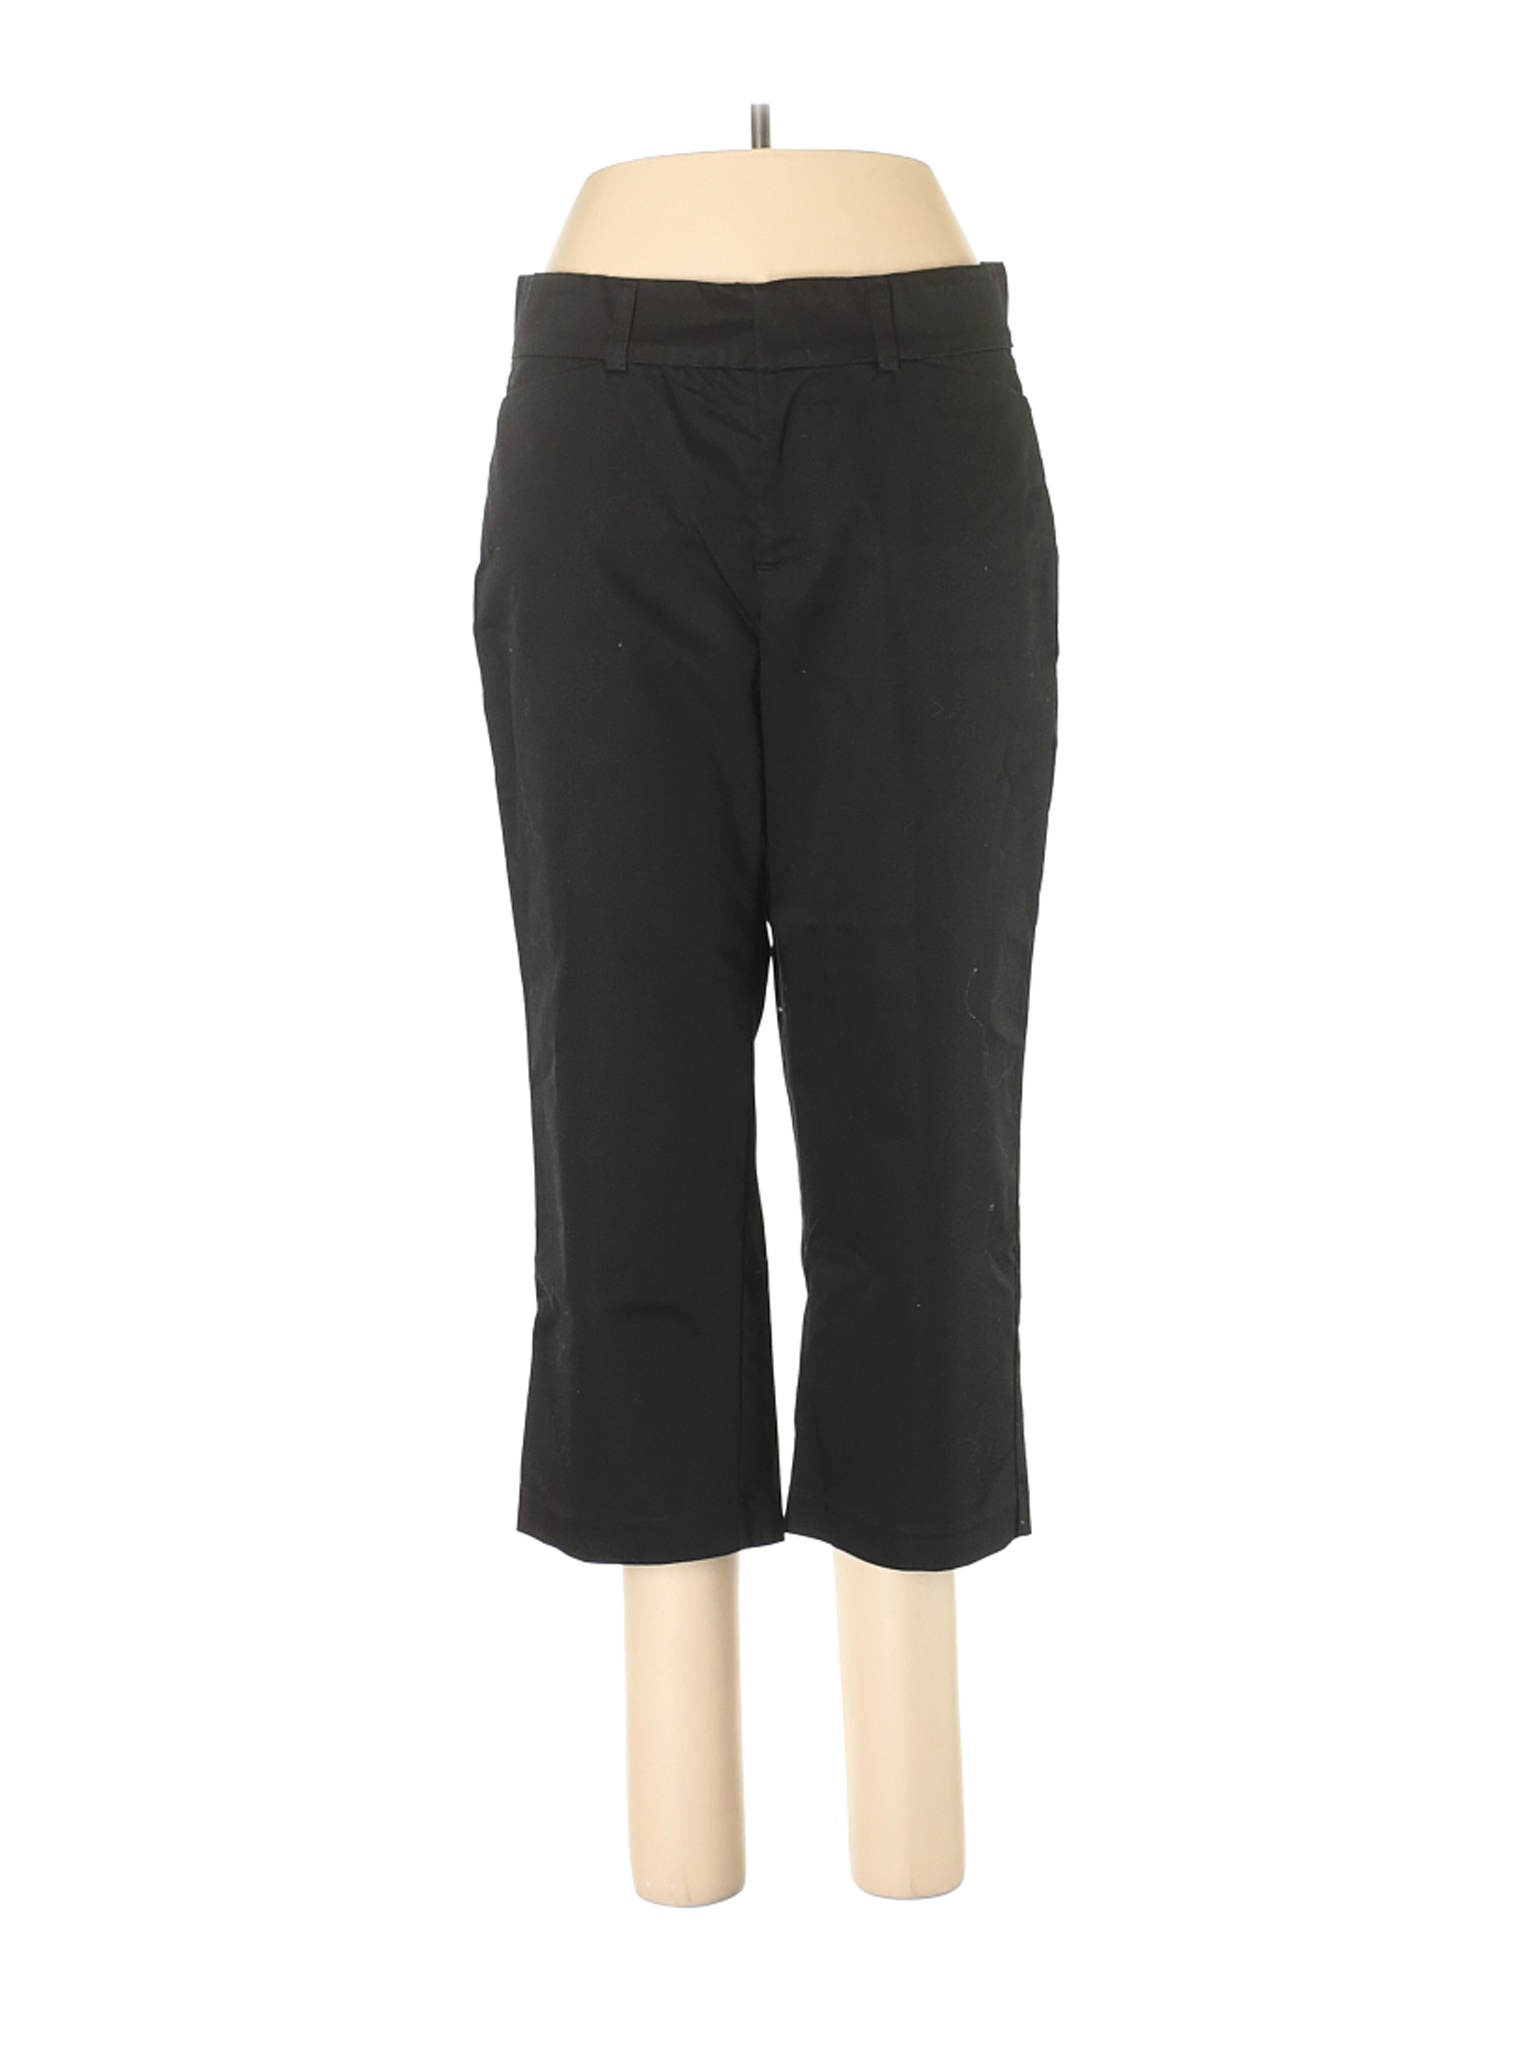 Dockers Women Black Casual Pants 10 | eBay